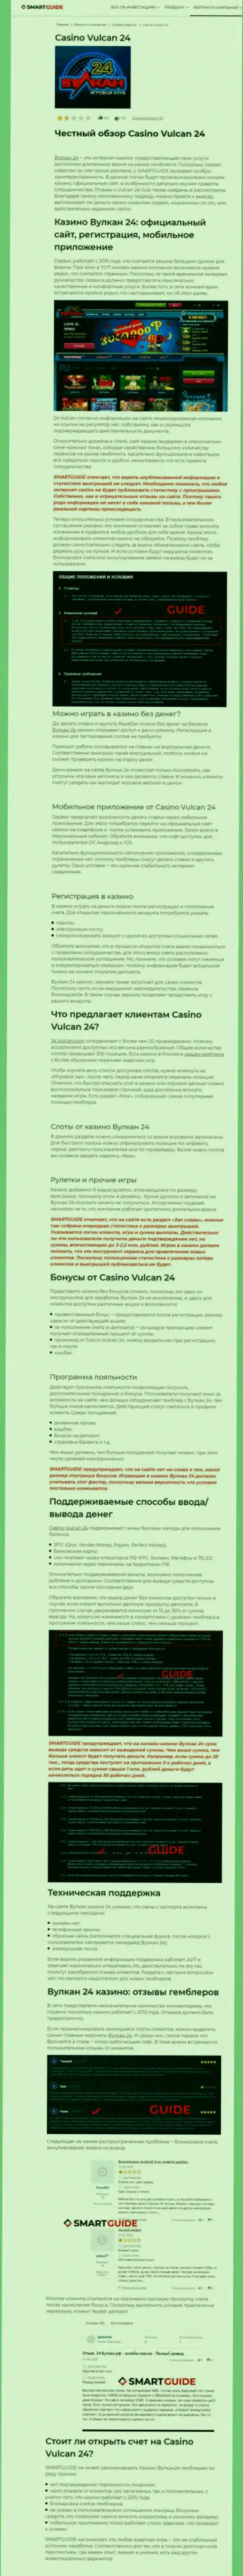 Wulkan 24 - это компания, зарабатывающая на грабеже вложенных денежных средств клиентов (обзор)